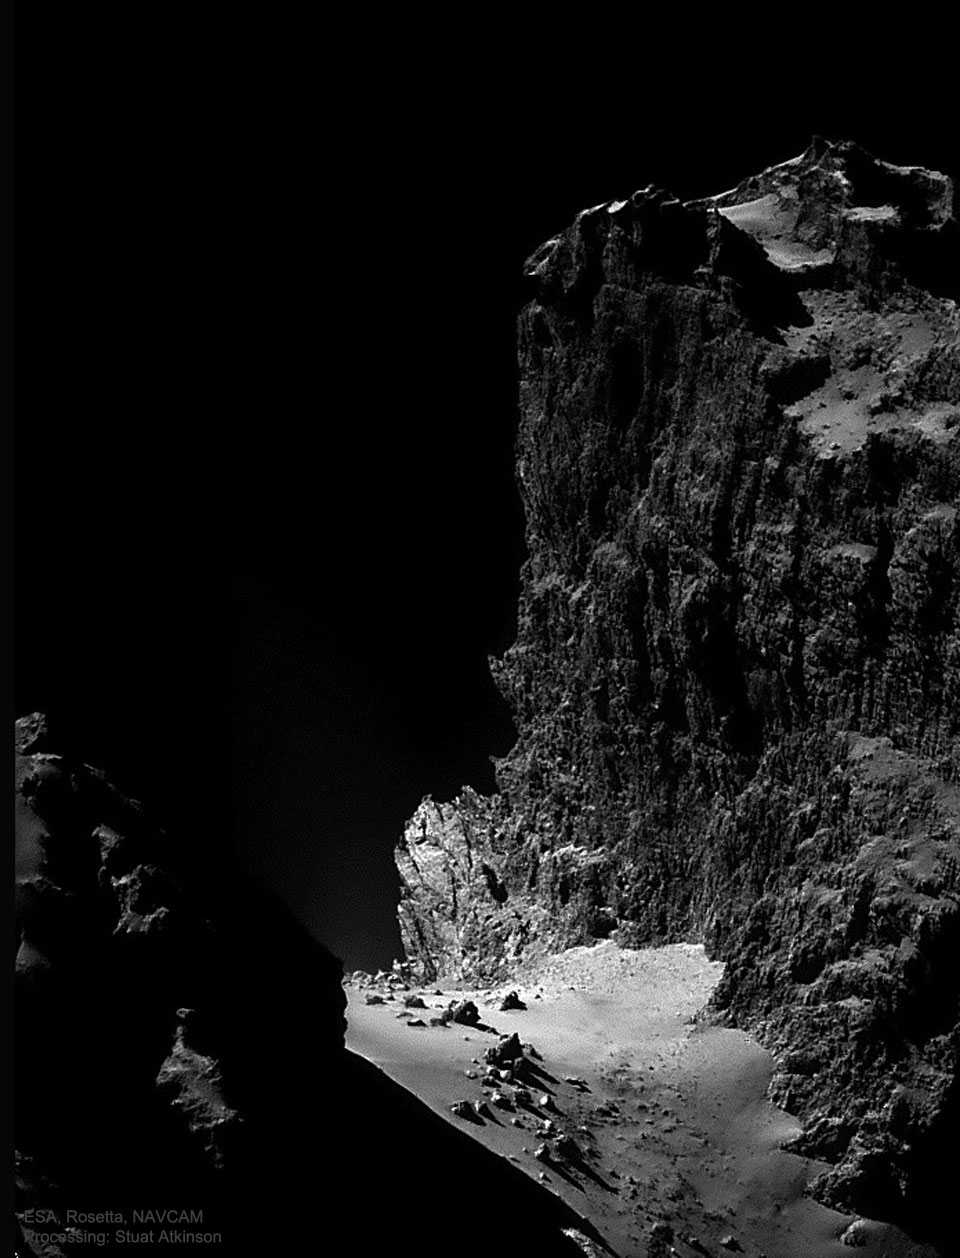 Klippe auf dem Kometen Tschurjumow-Gerassimenko, fotografiert von der Raumsonde Rosetta.